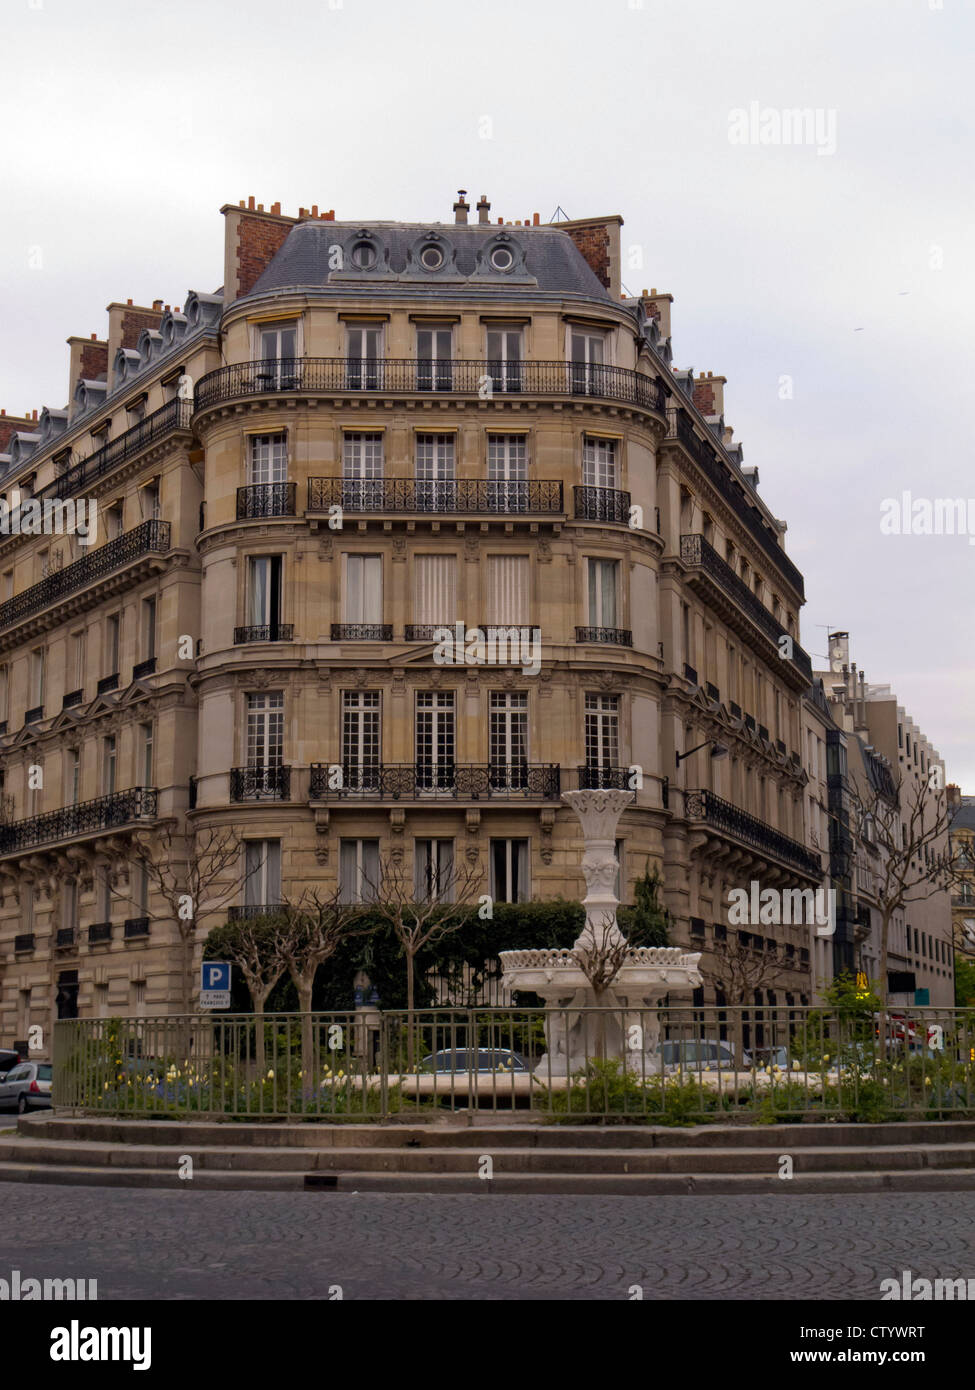 Place Francois 1er, 8th arrondisement, Paris, France Stock Photo